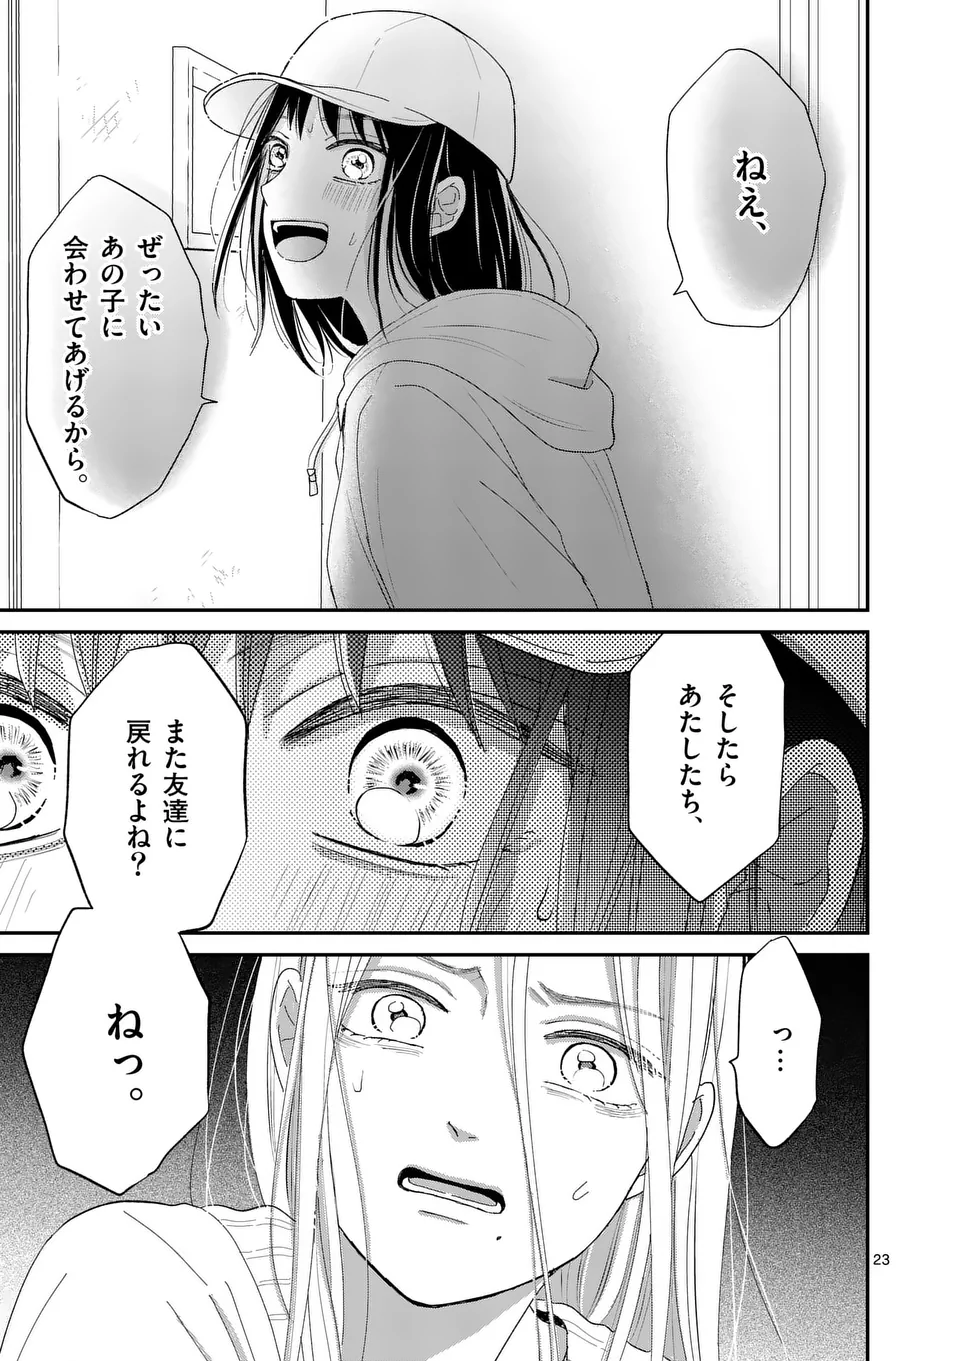 Atashi wo Ijimeta Kanojo no Ko - Chapter 2 - Page 23